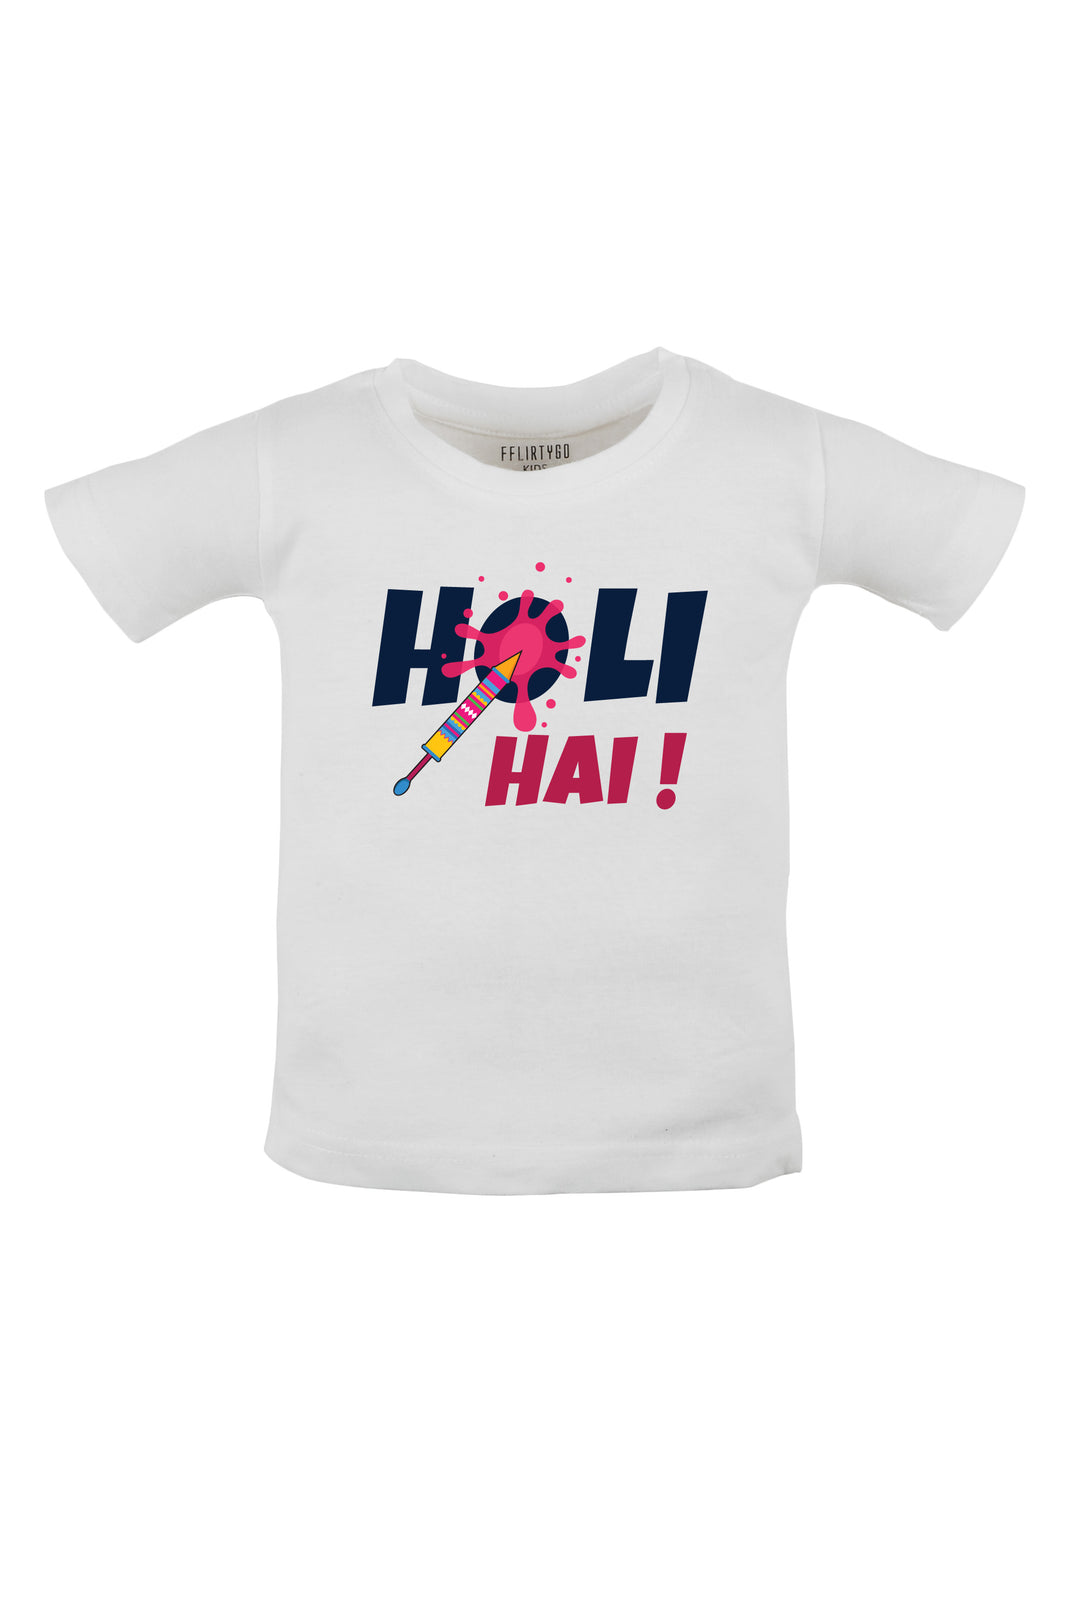 Holi Hai Kids T Shirt